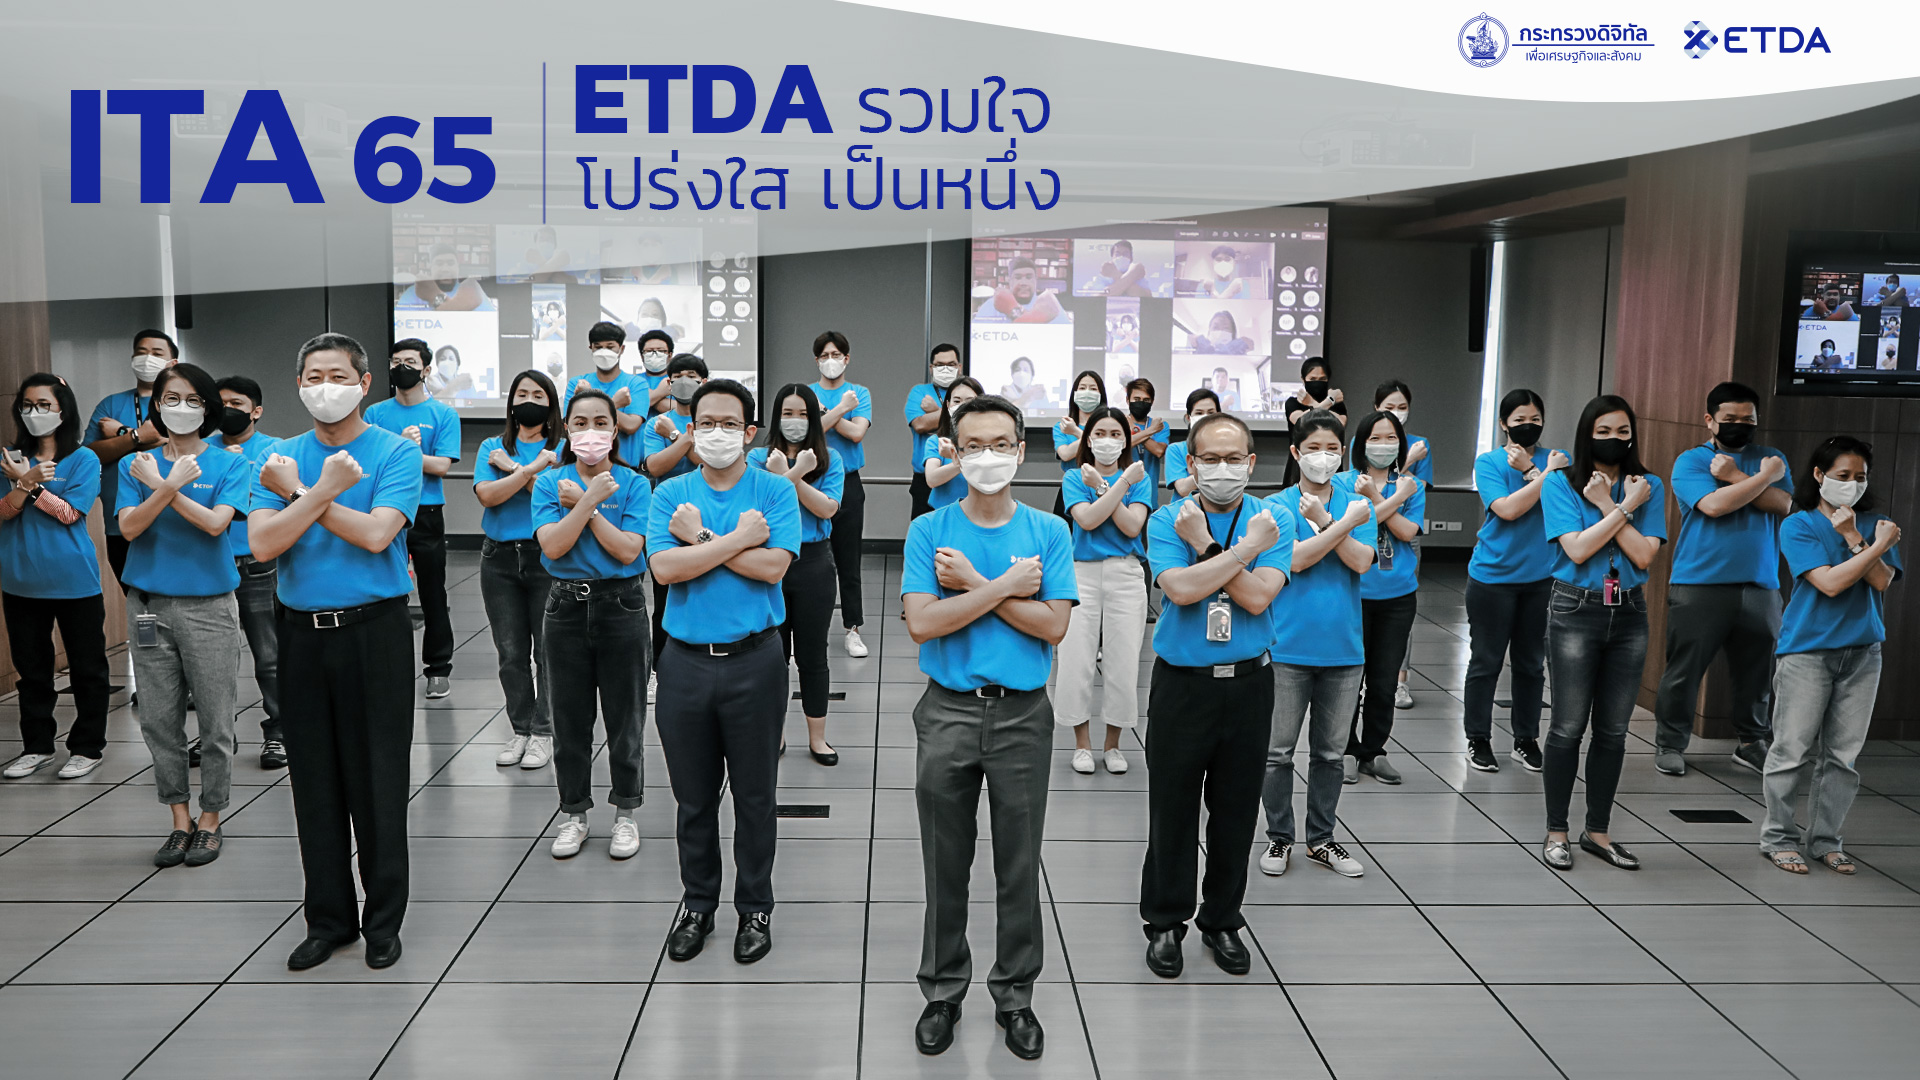 ETDA ร่วมประกาศยืนยันเจตจำนง “ITA 65…ETDA รวมใจ โปร่งใส เป็นหนึ่ง”